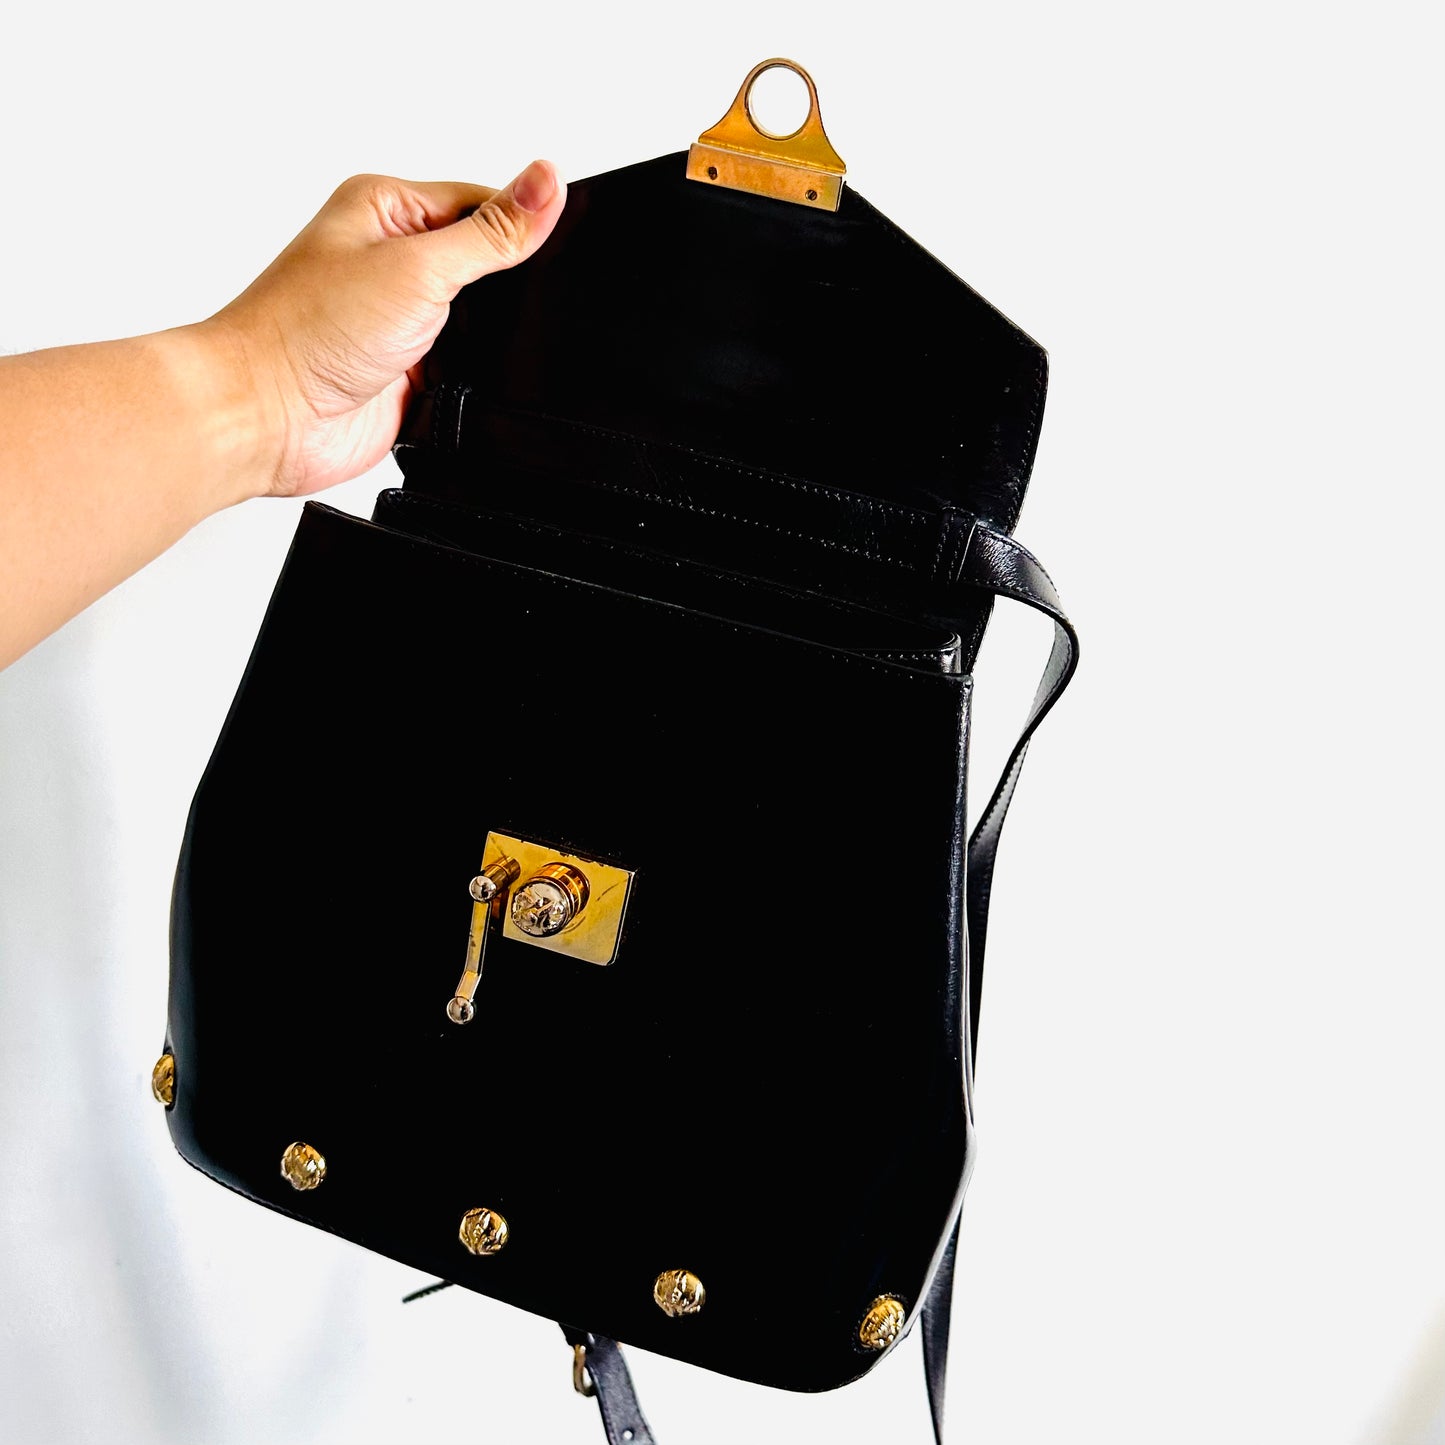 Salvatore Ferragamo Kelly Black GHW Studded Logo Smooth Leather Top Handle 2-Way Shoulder Sling Bag